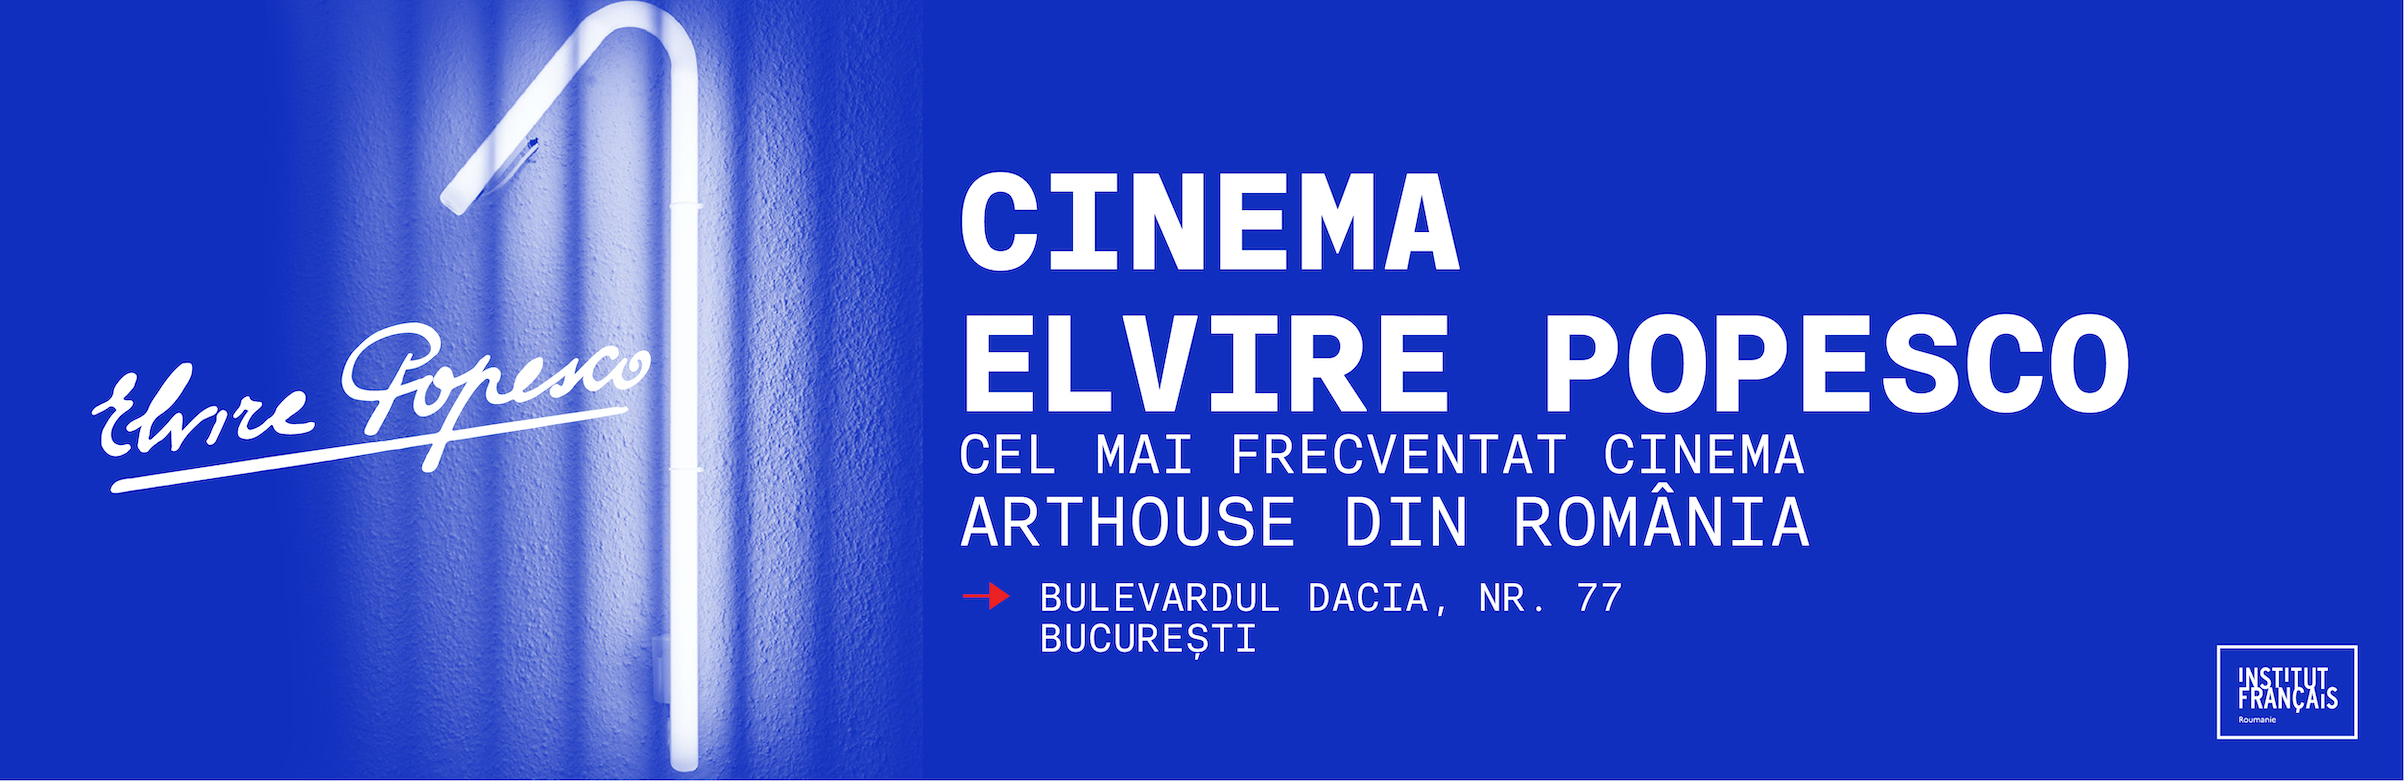 Cinema Elvire Popesco